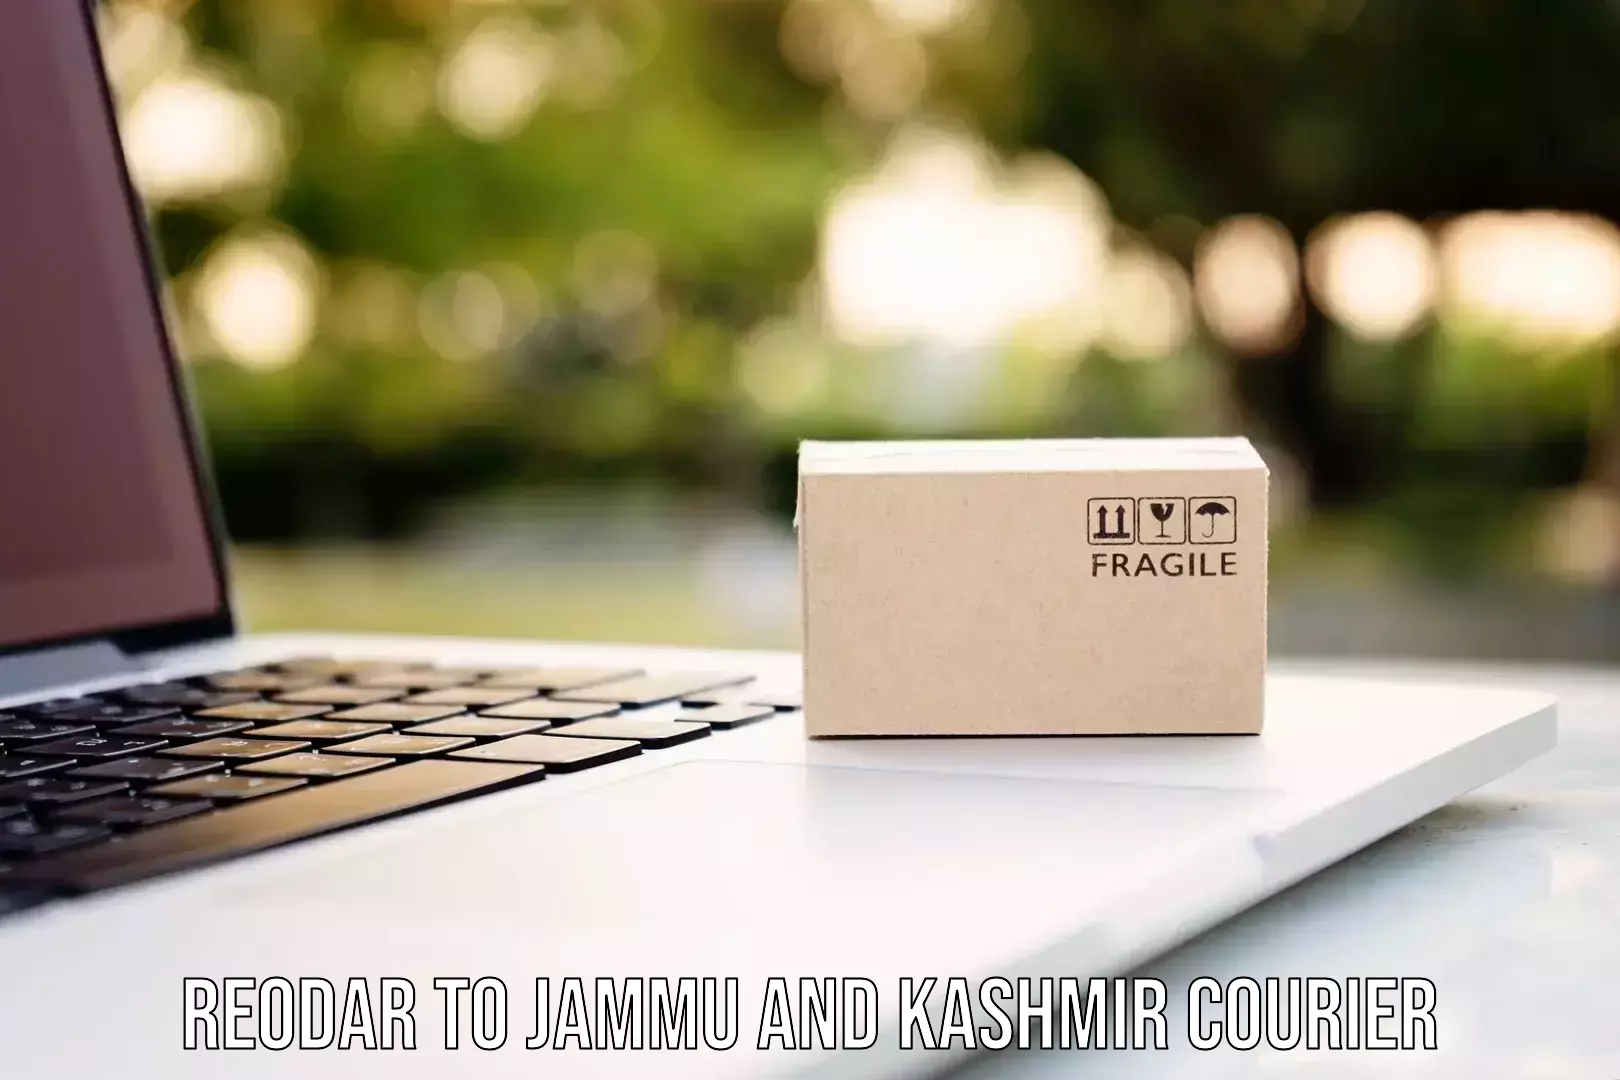 Cost-effective courier options Reodar to Srinagar Kashmir